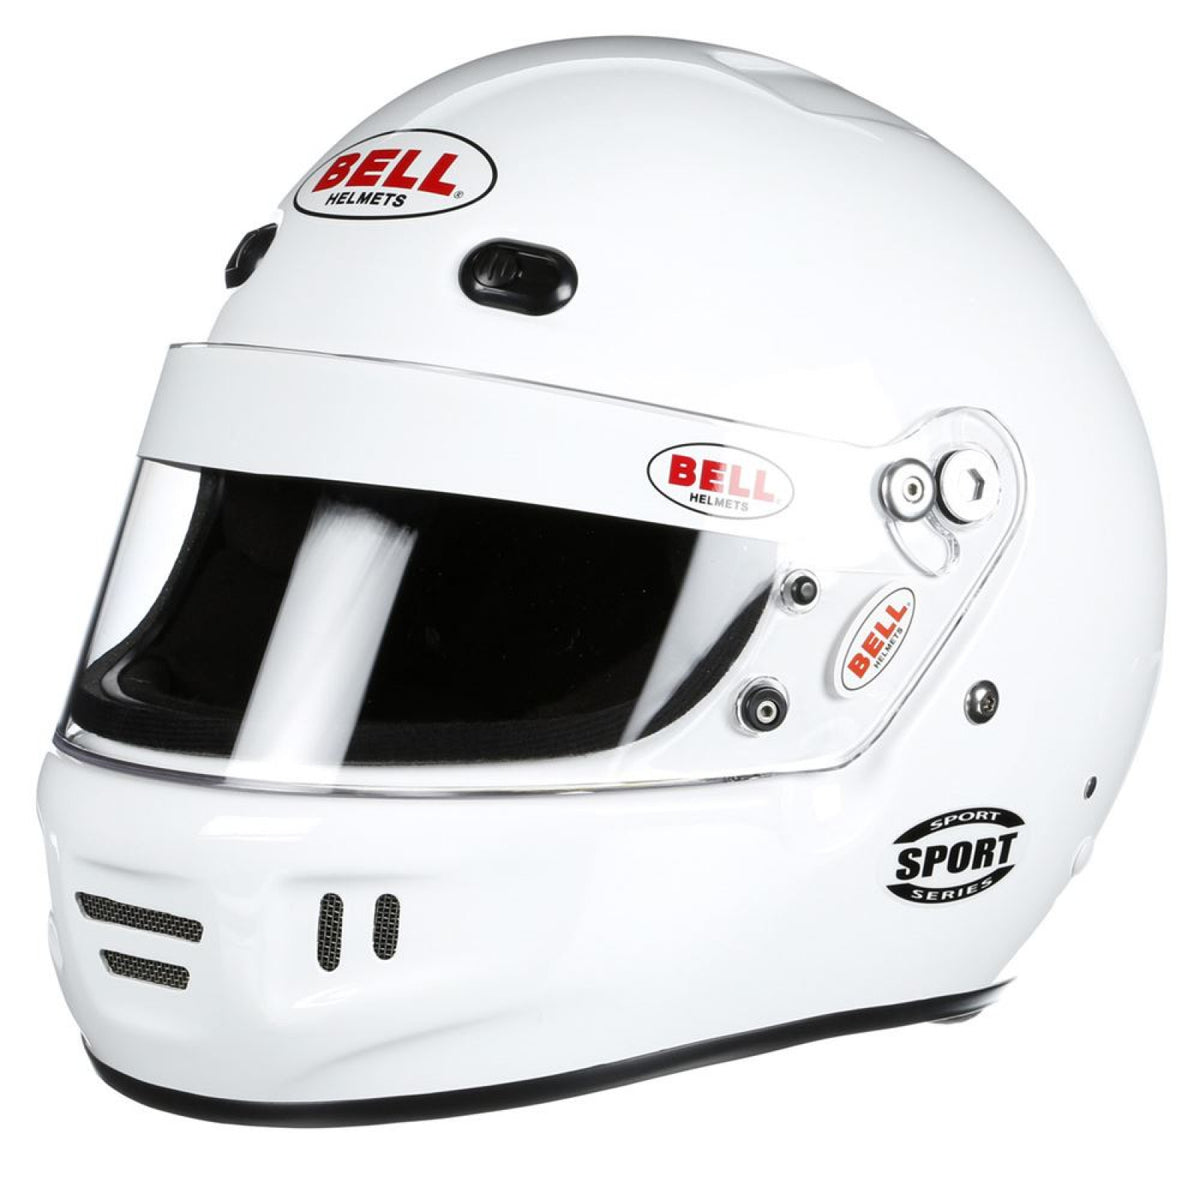 Bell K1 Sport White Helmet Large (60)